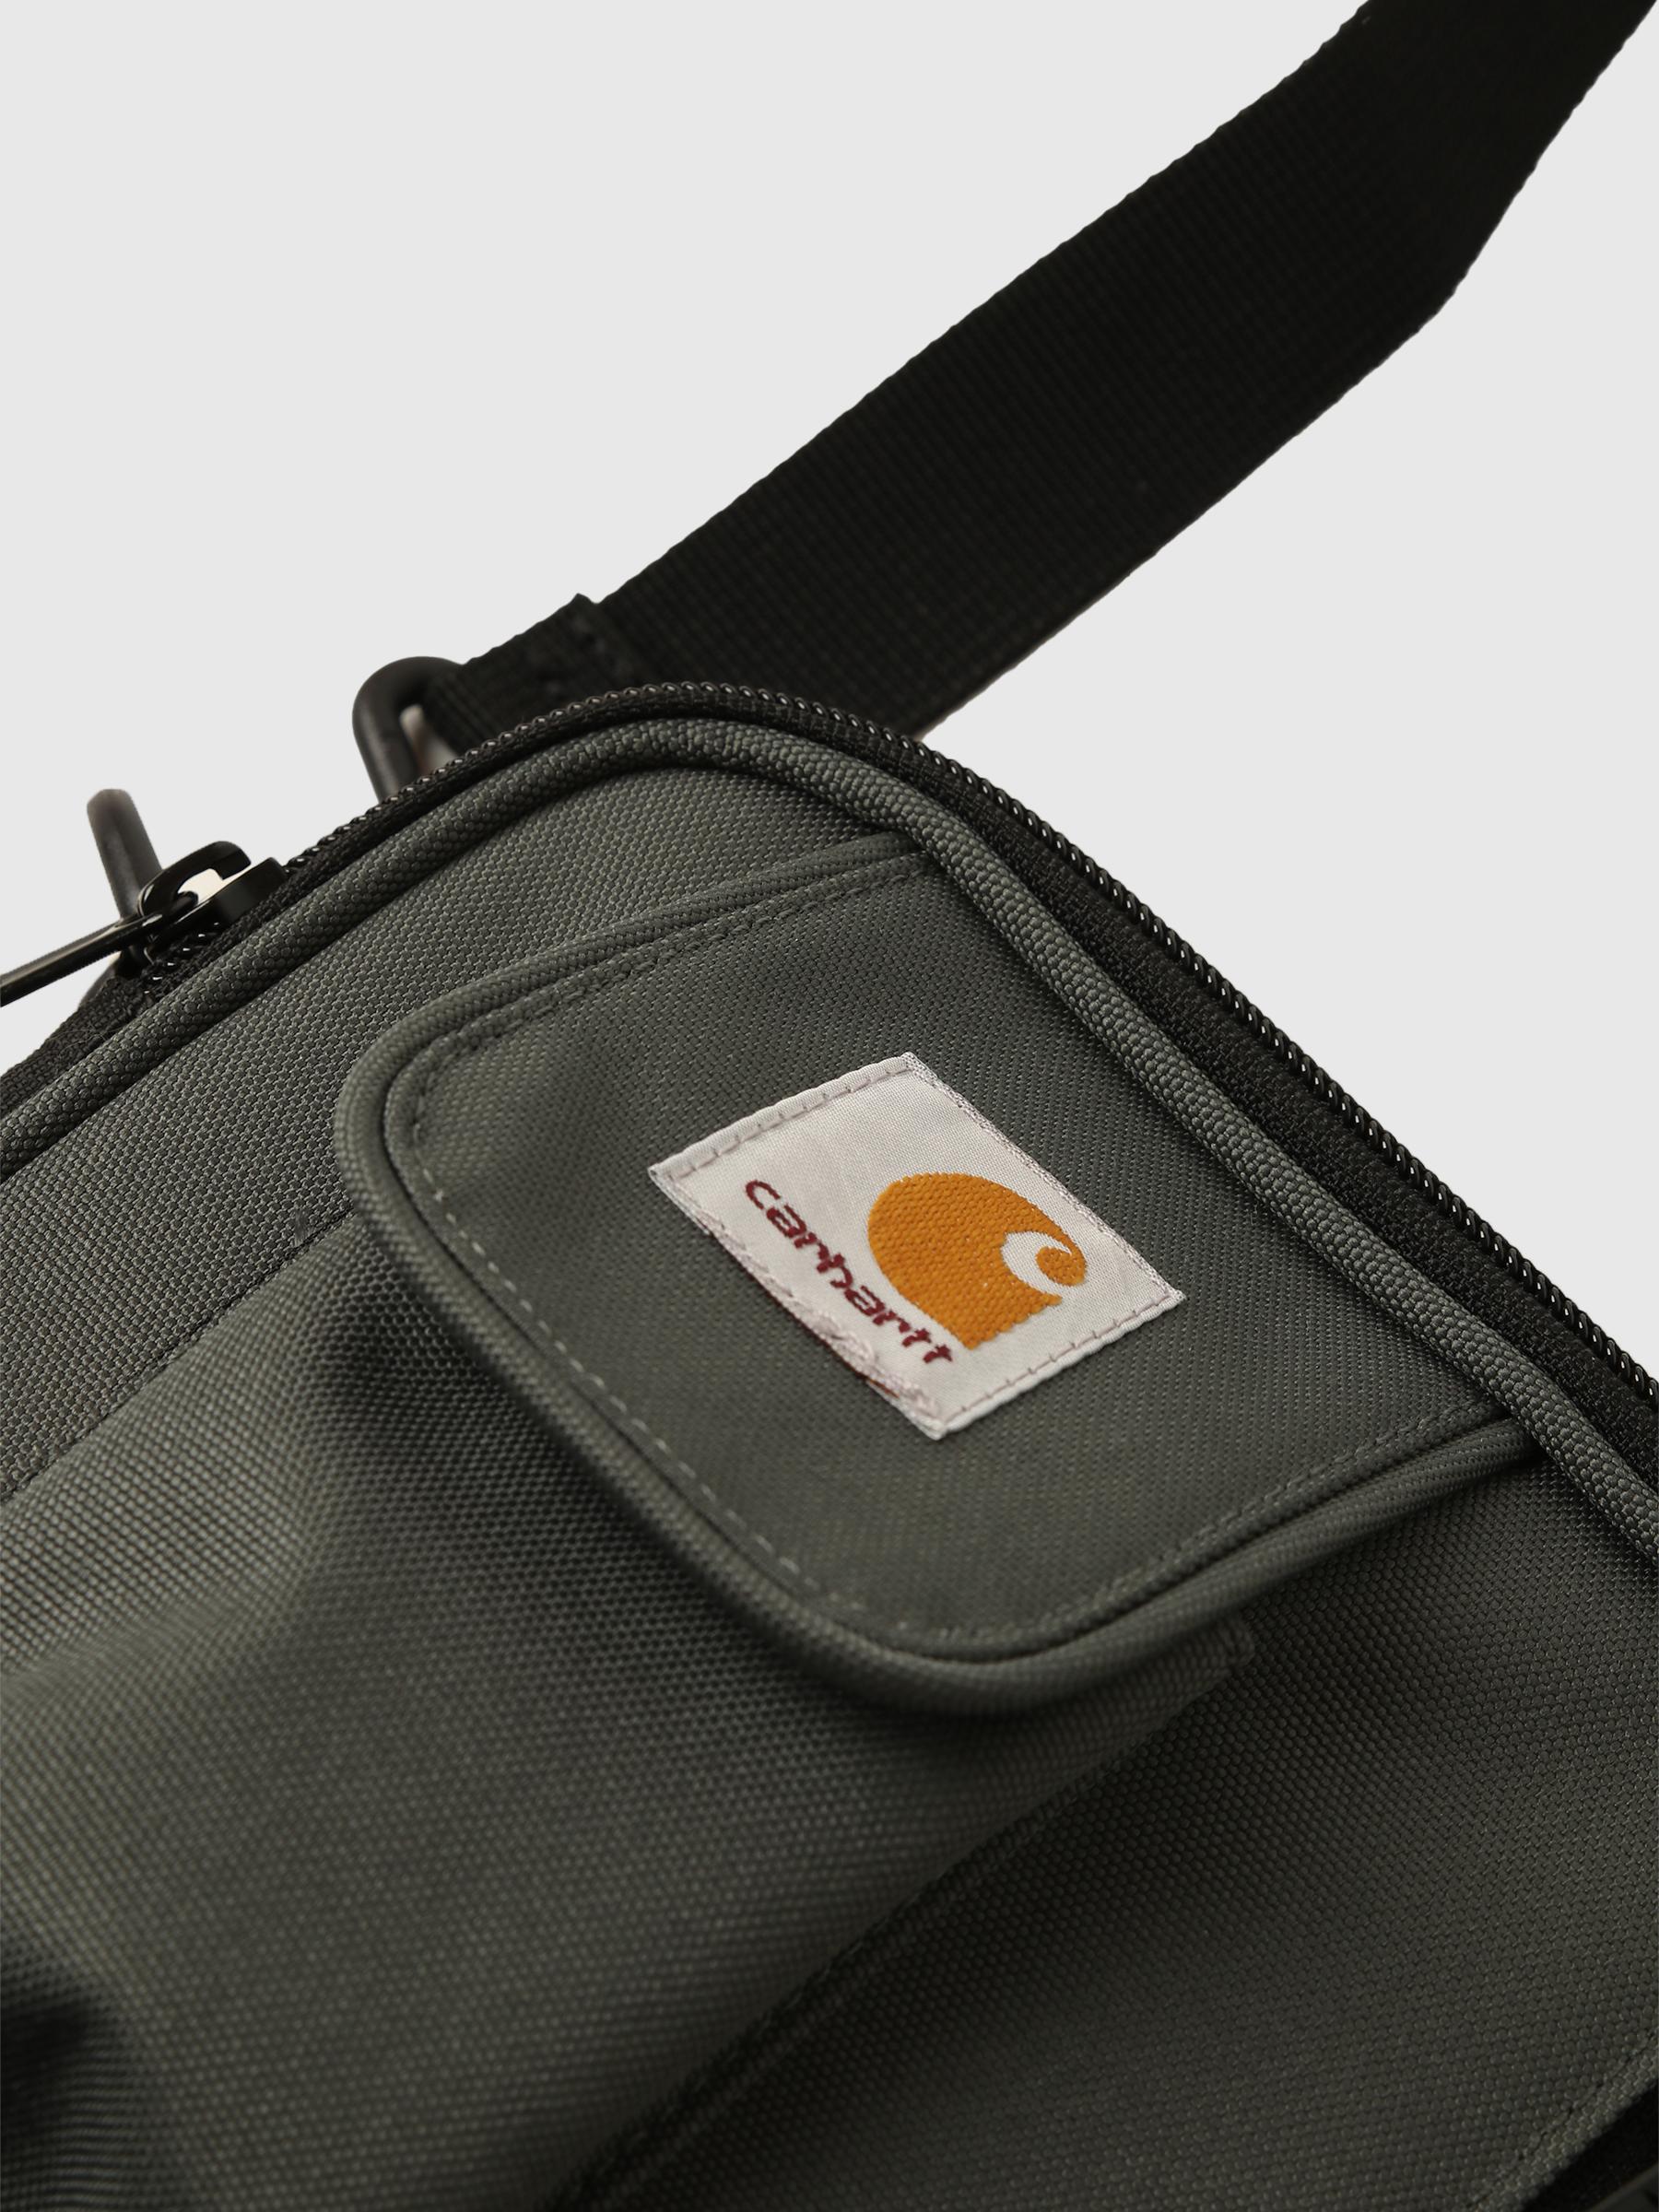 Carhartt WIP - Tasche Essentials - Grünolive